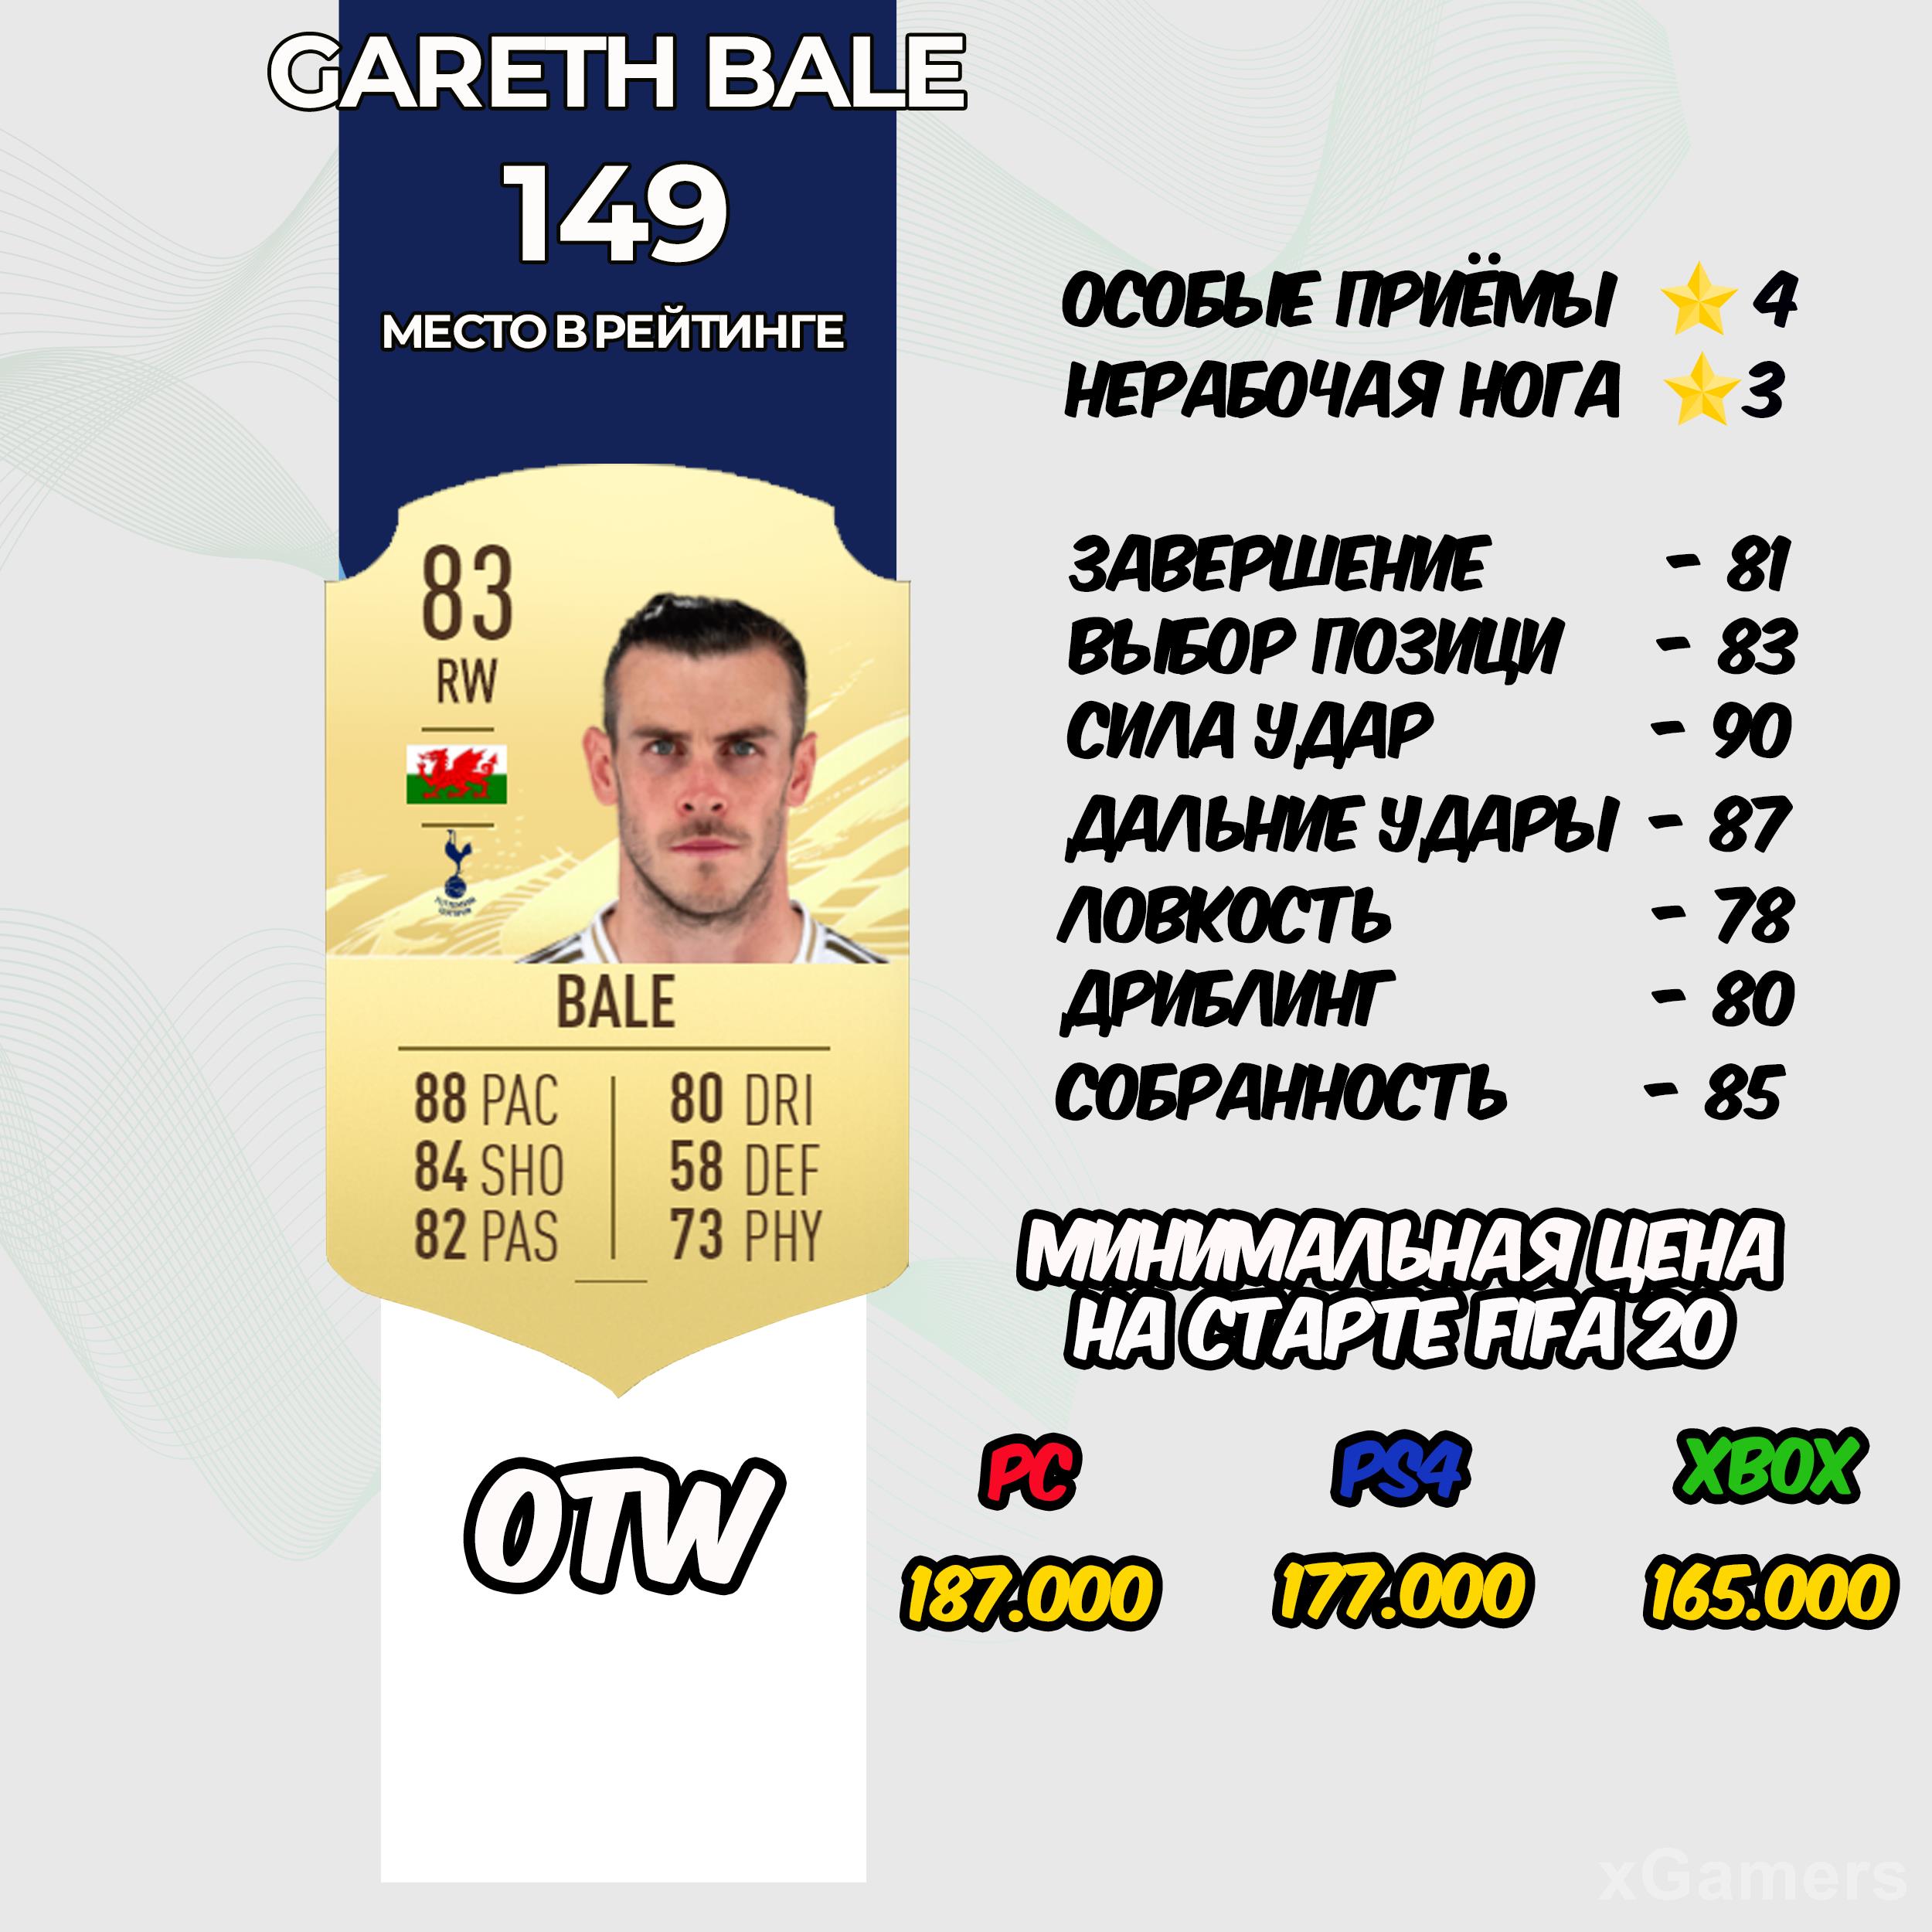 Gareth Bale - место в рейтинге 149